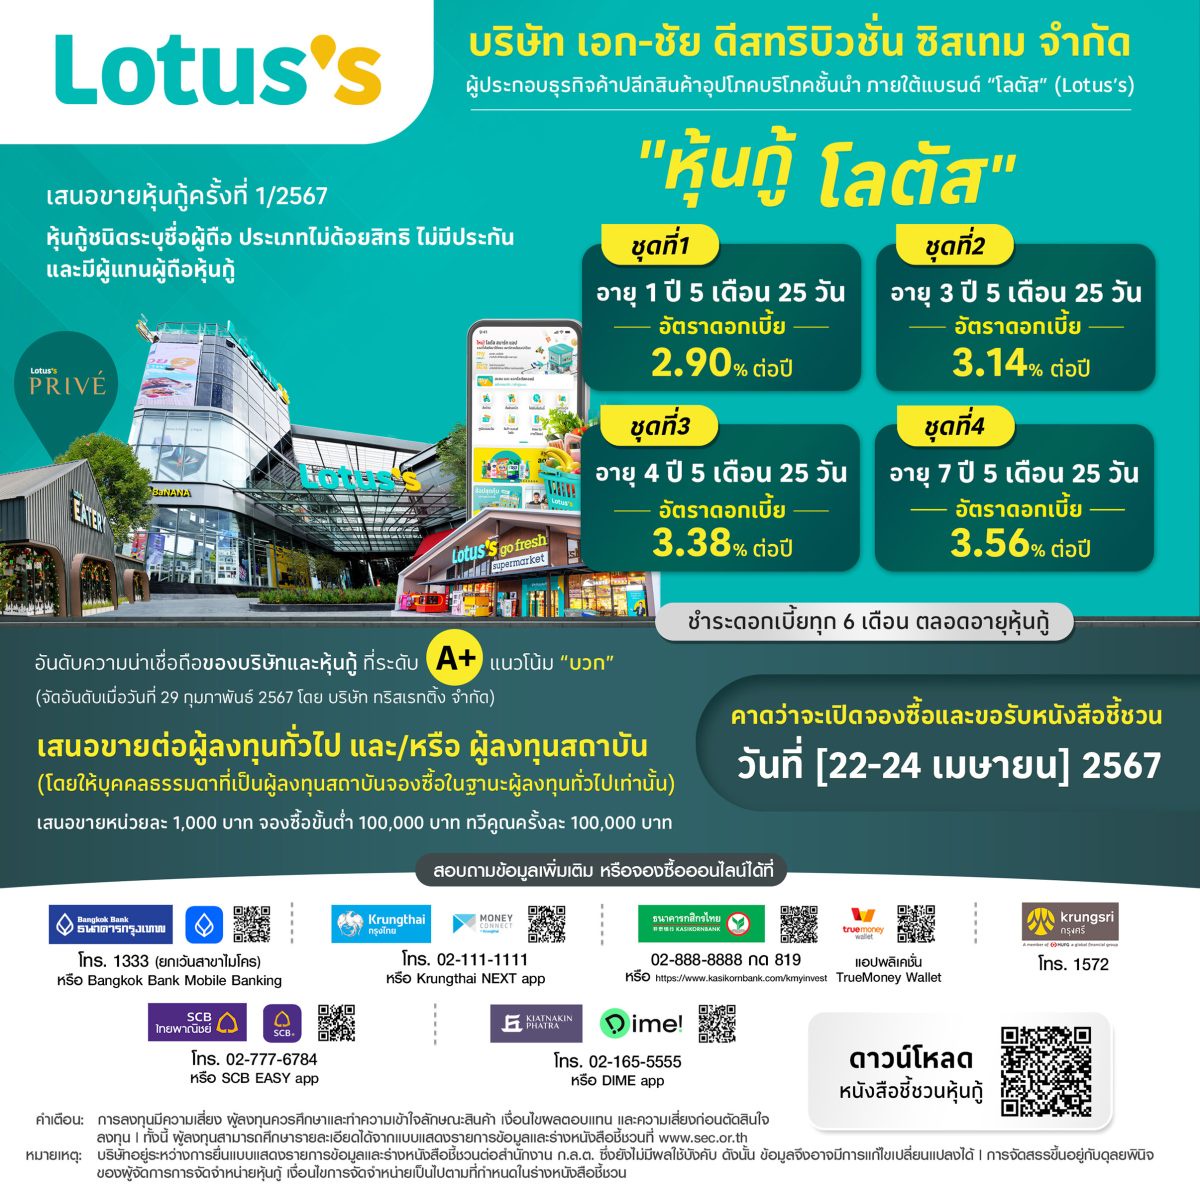 โลตัส (Lotus's) เคาะอัตราดอกเบี้ยหุ้นกู้ 4 ชุด อัตรา 2.90-3.56% ต่อปี เปิดโอกาสประชาชนทั่วไปจองซื้อ 22-24 เมษายน 2567